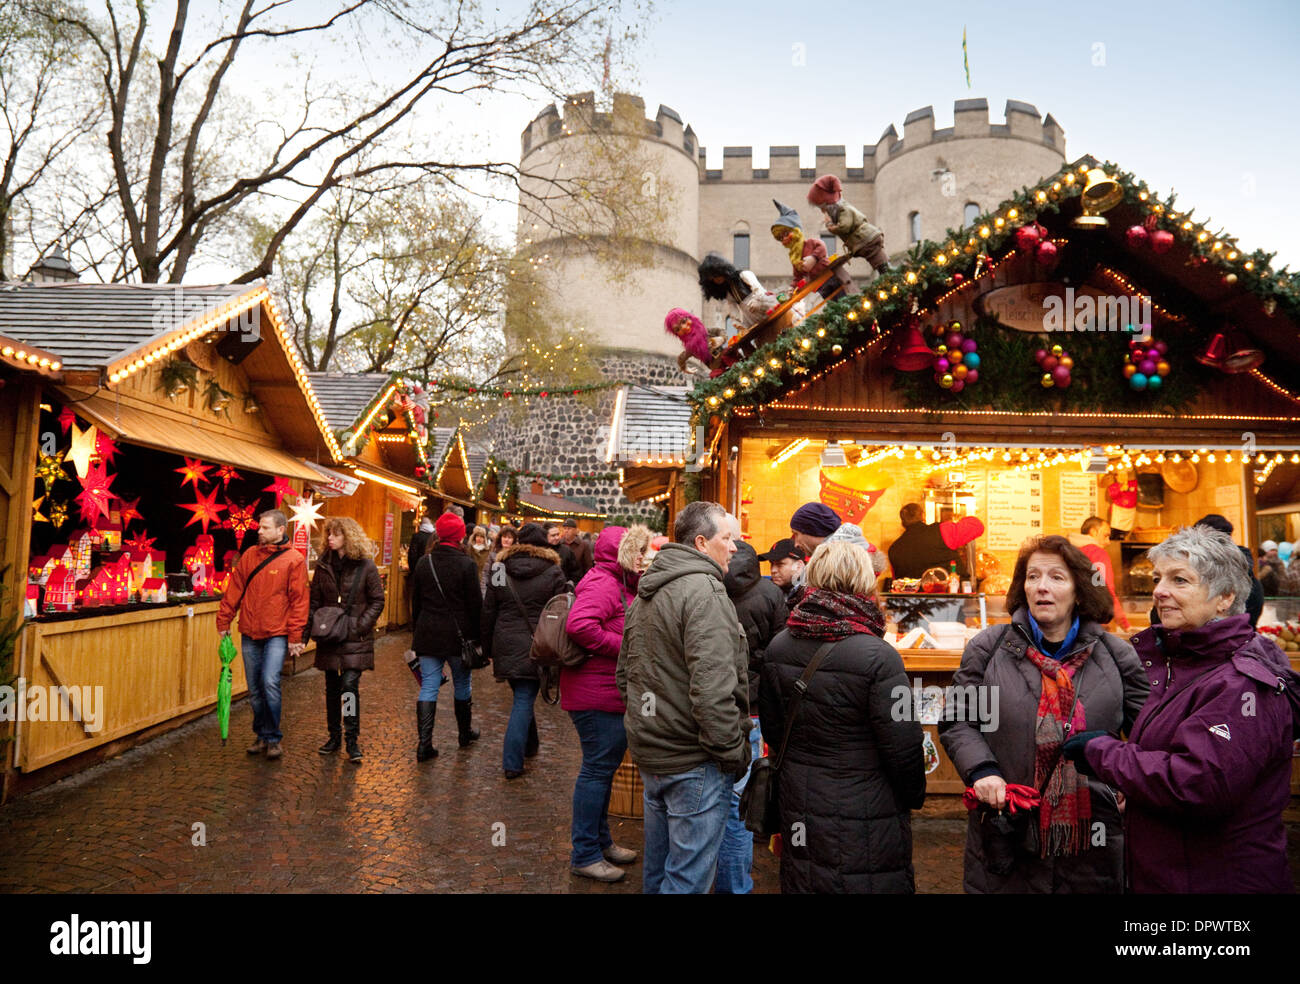 Marché de Noël de Cologne - les gens au marché de contes de fées, qui s'est tenue dans la Rudolfplatz, Cologne, Allemagne Europe Banque D'Images